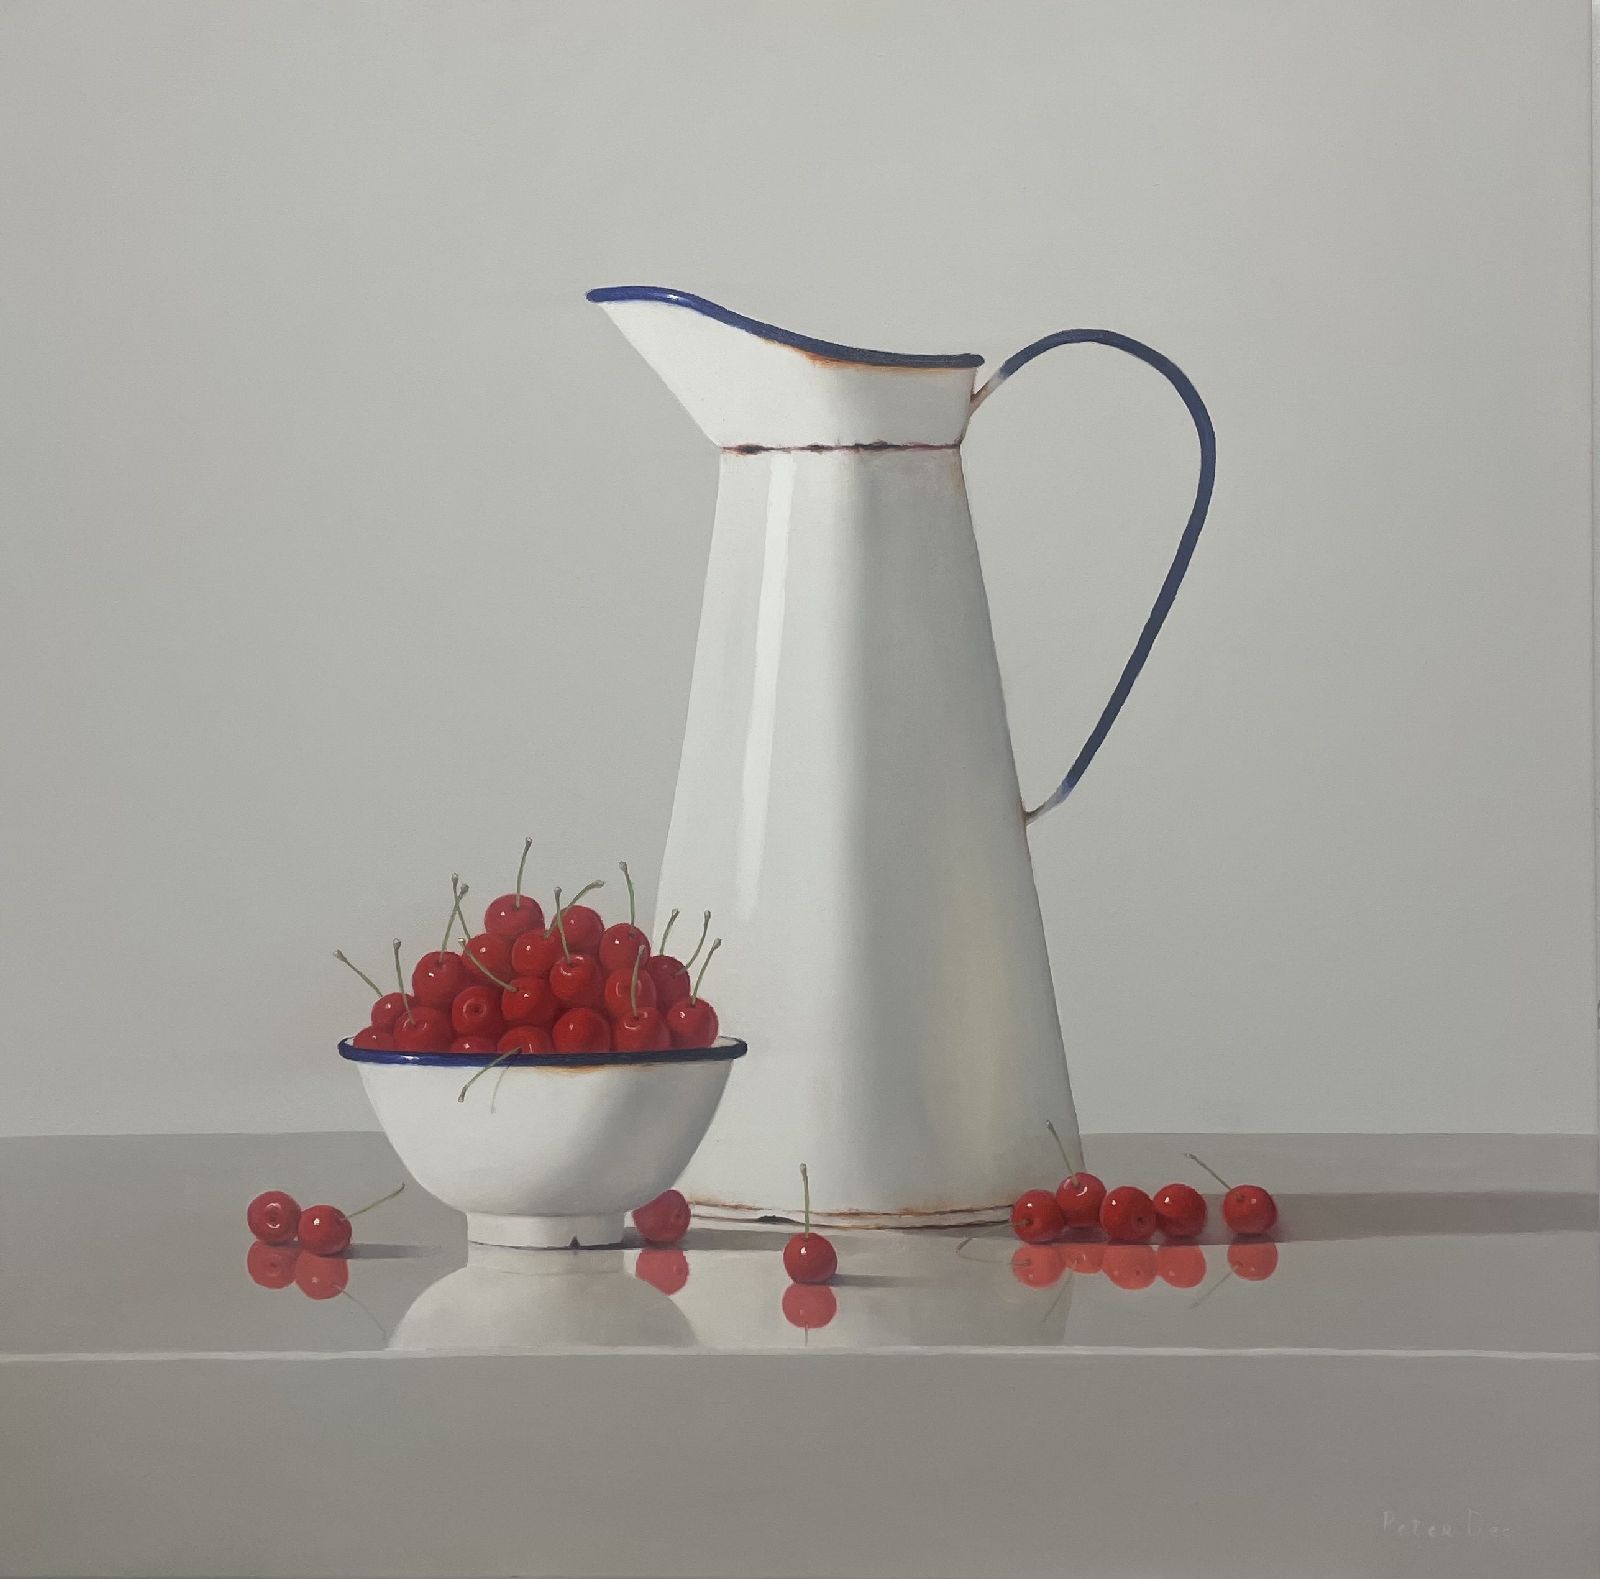 Peter Dee - Vintage White Enamelware with Cherries